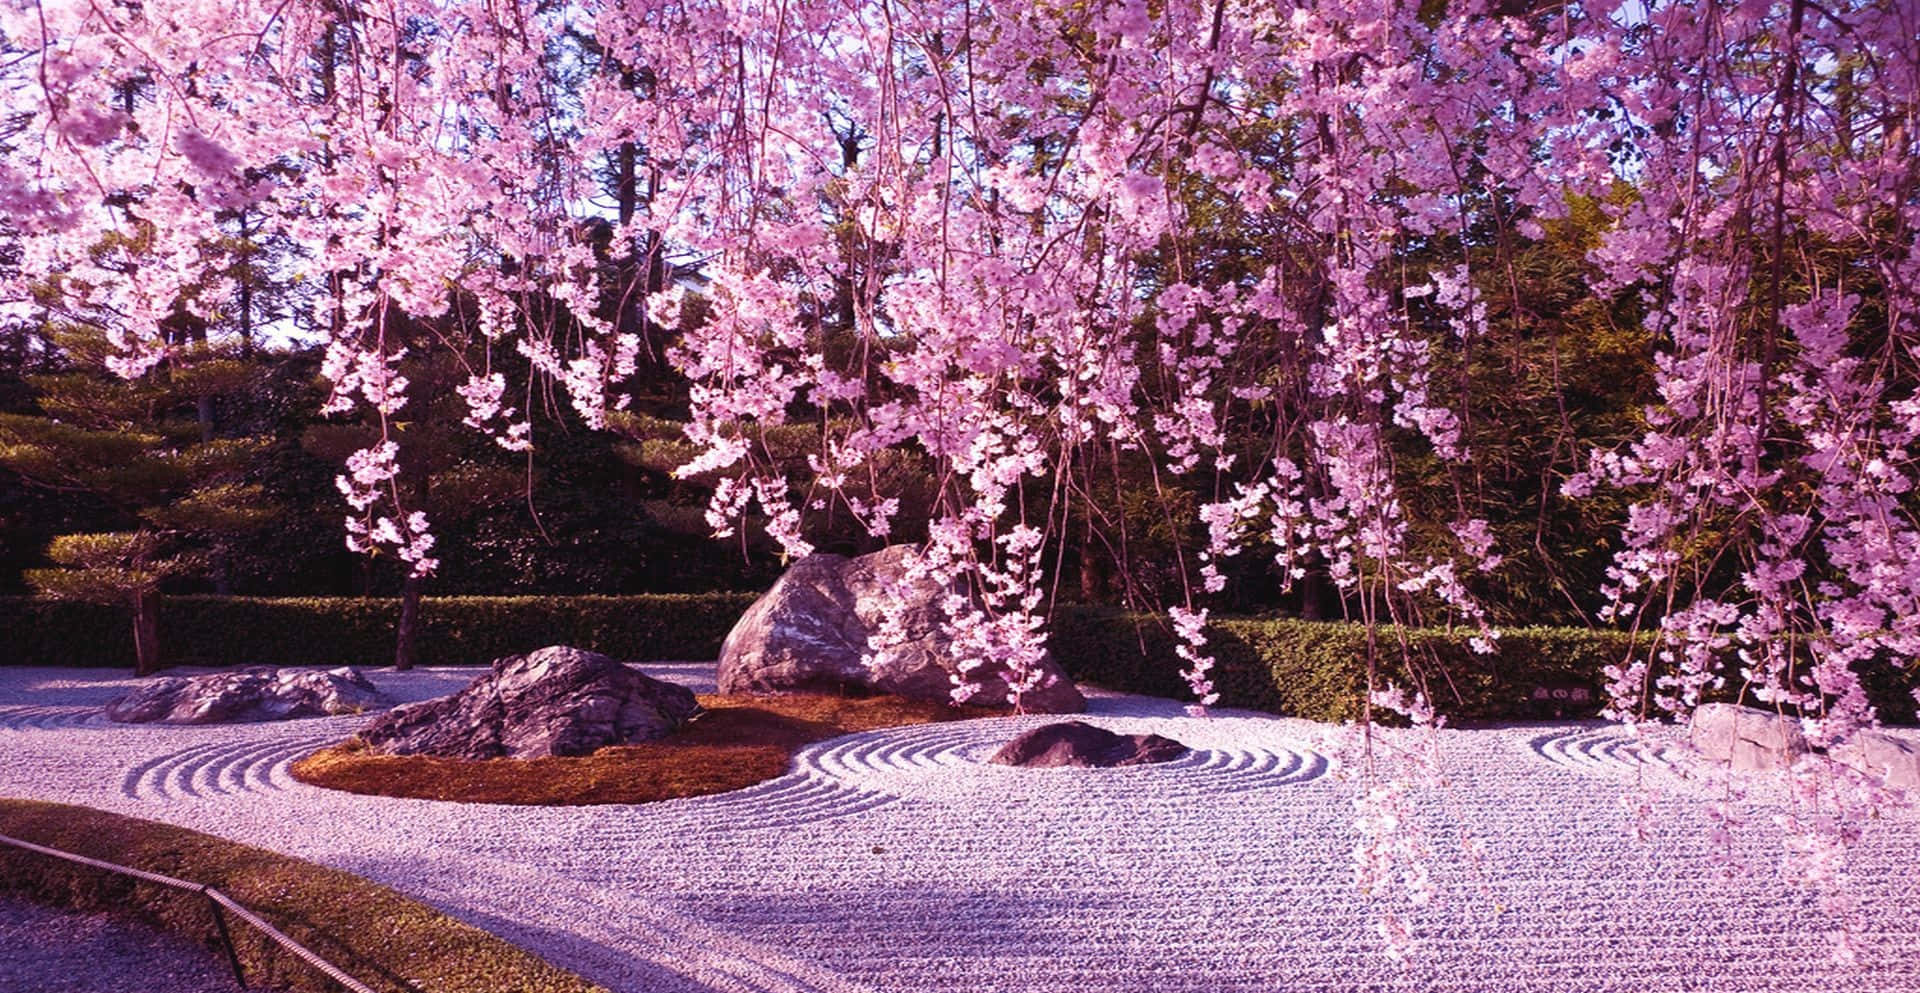 A breathtaking view of a Sakura Blossom tree in full bloom. Wallpaper